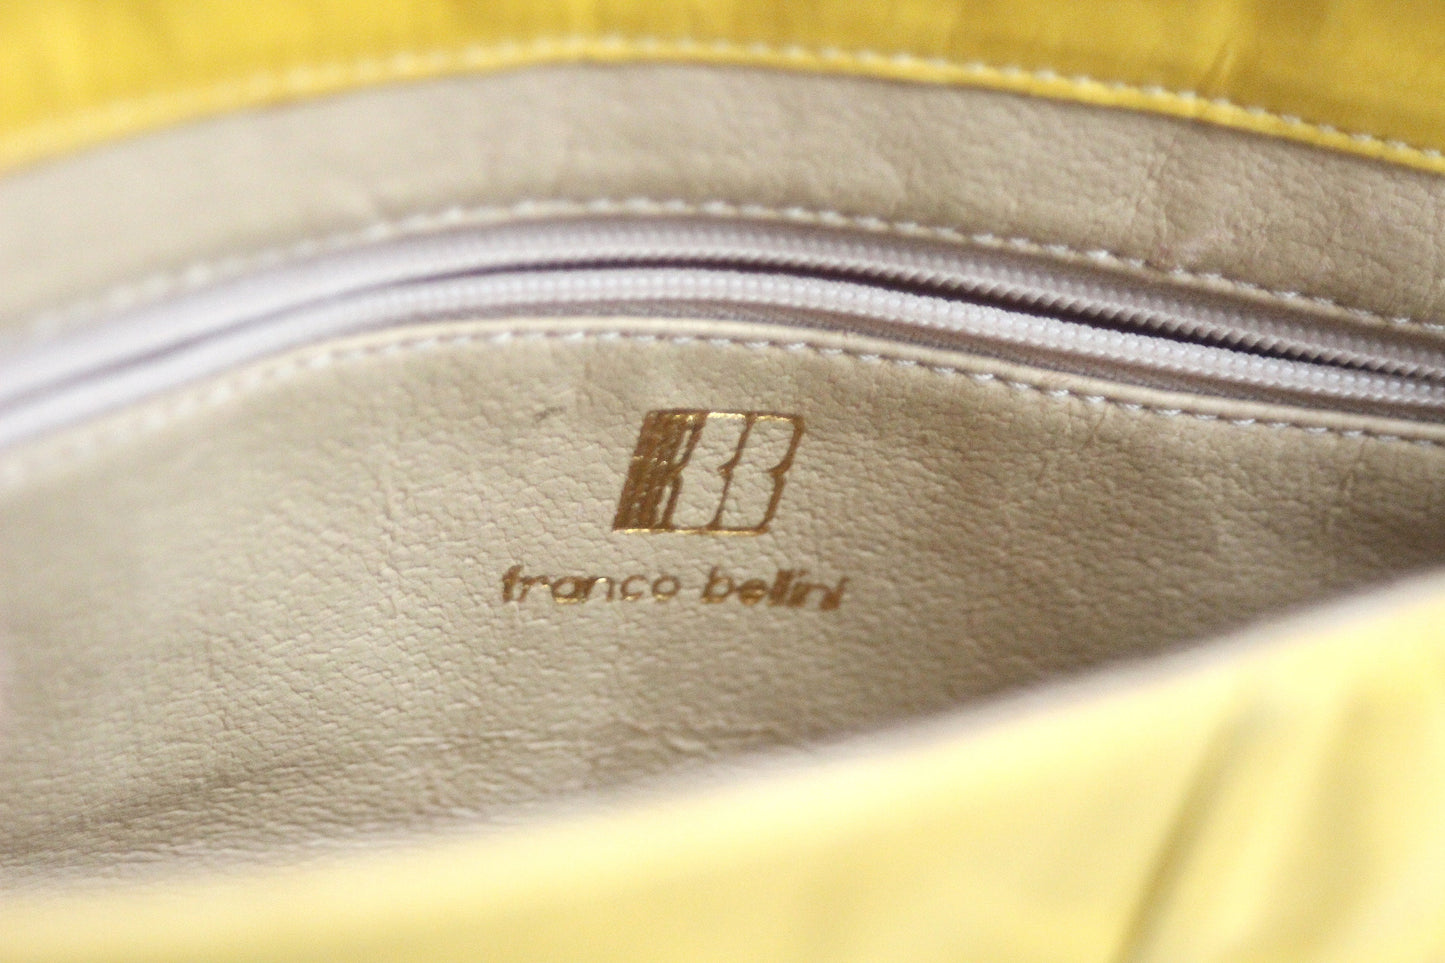 FRANCO BELLINI vintage bag. Italy 1990s.